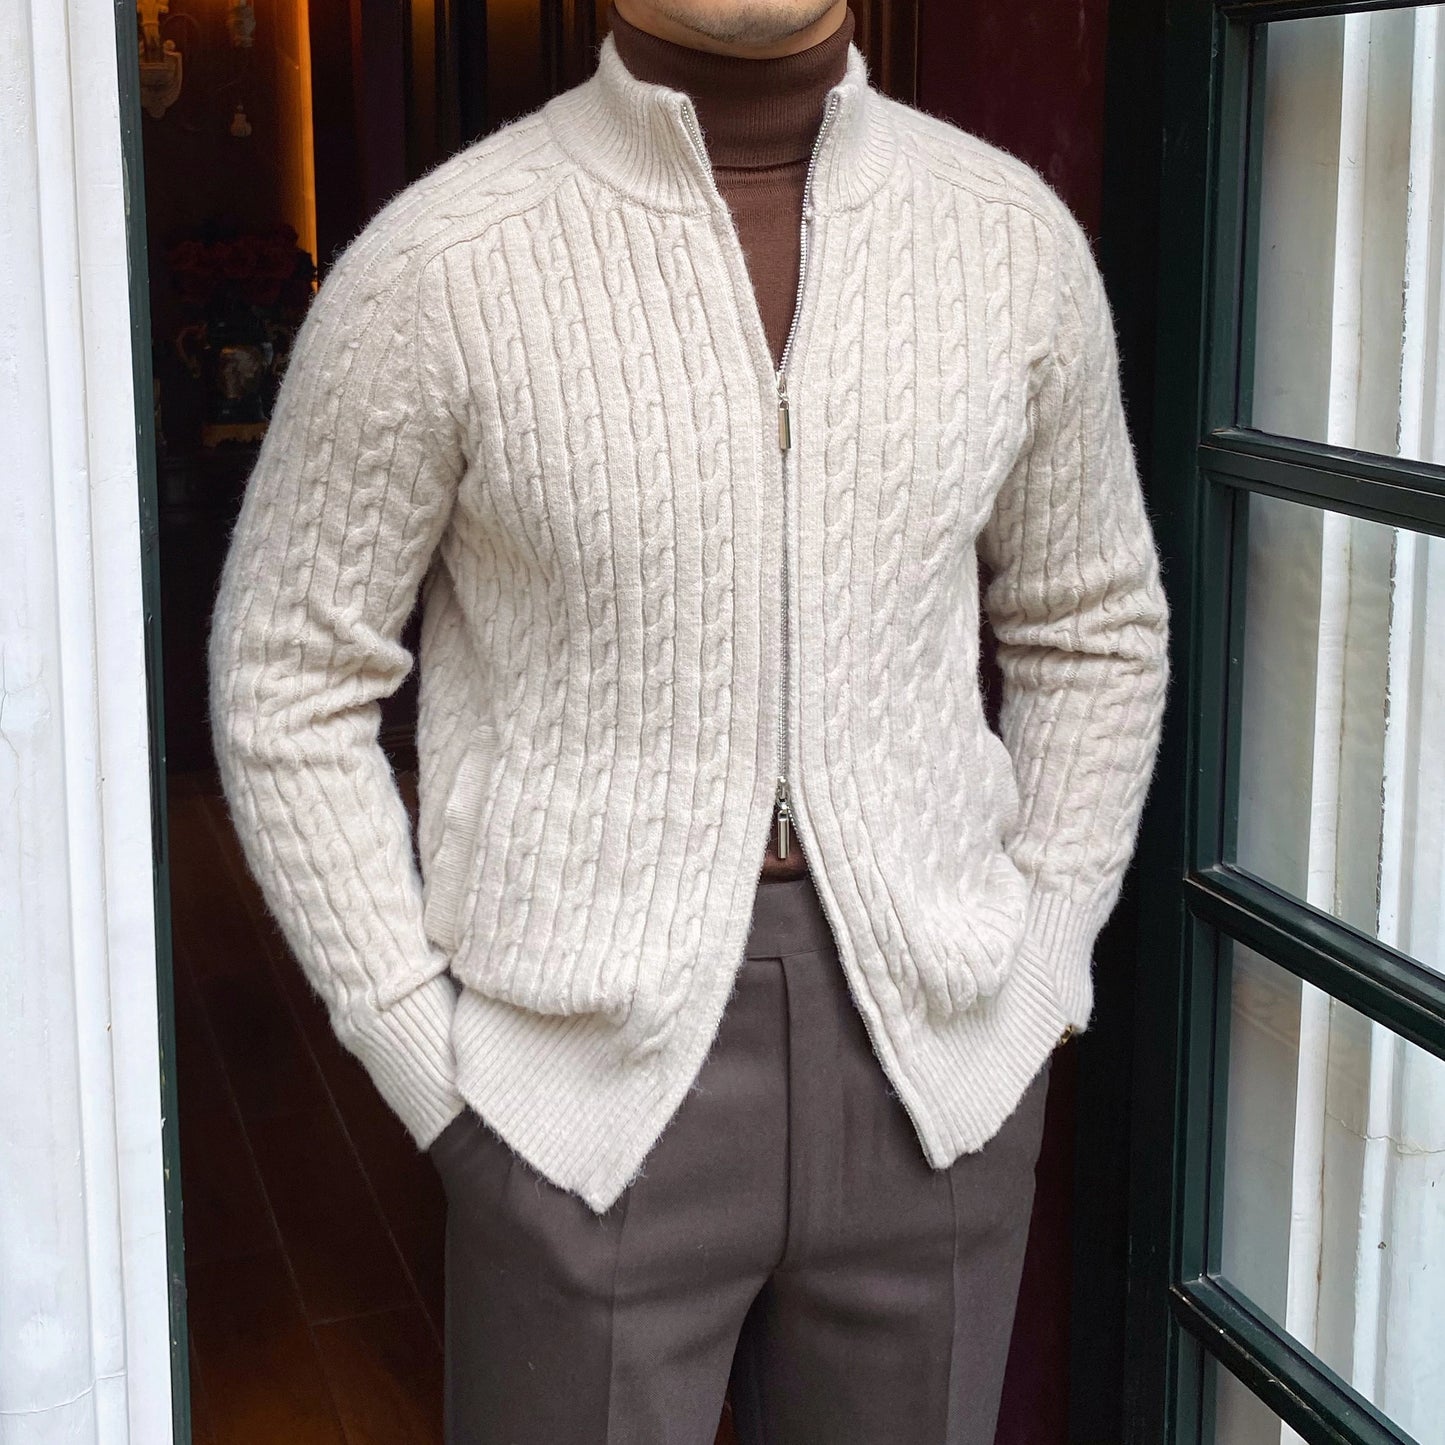 Men's Retro British Style Casual Cardigan